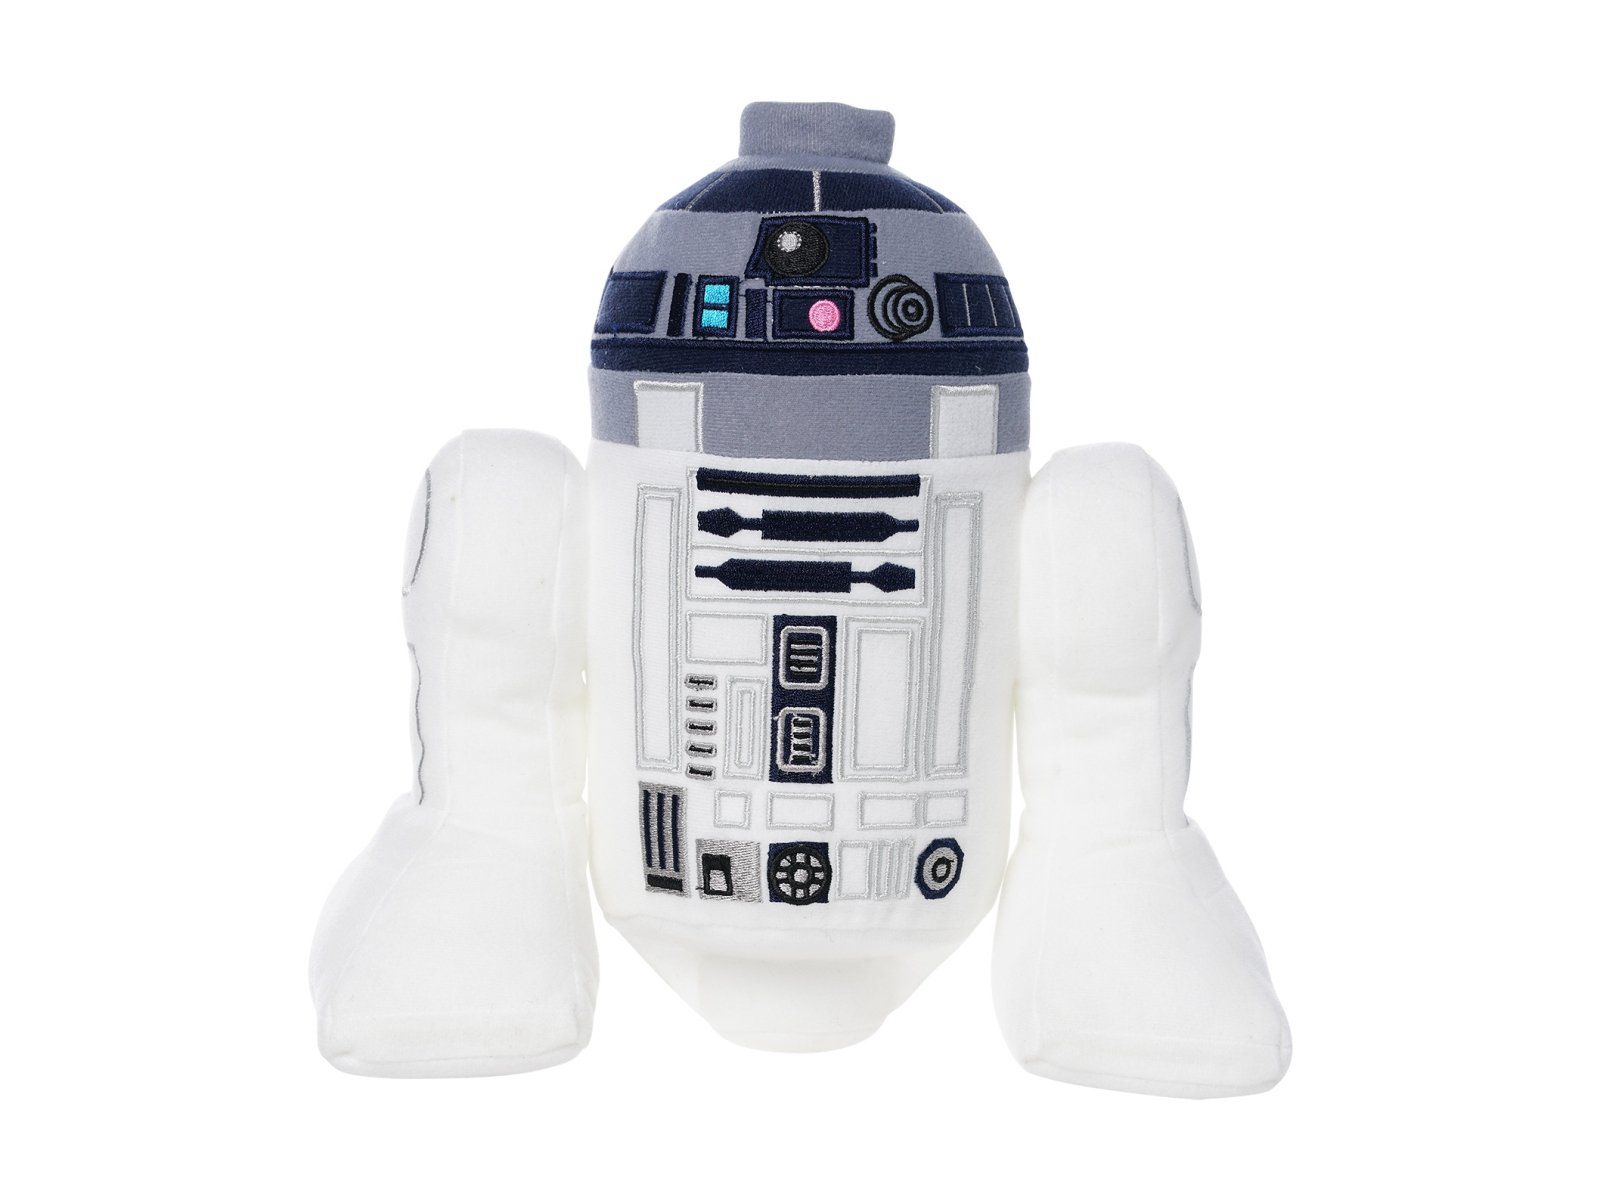 LEGO 5007459 Star Wars Pluszowy R2-D2™